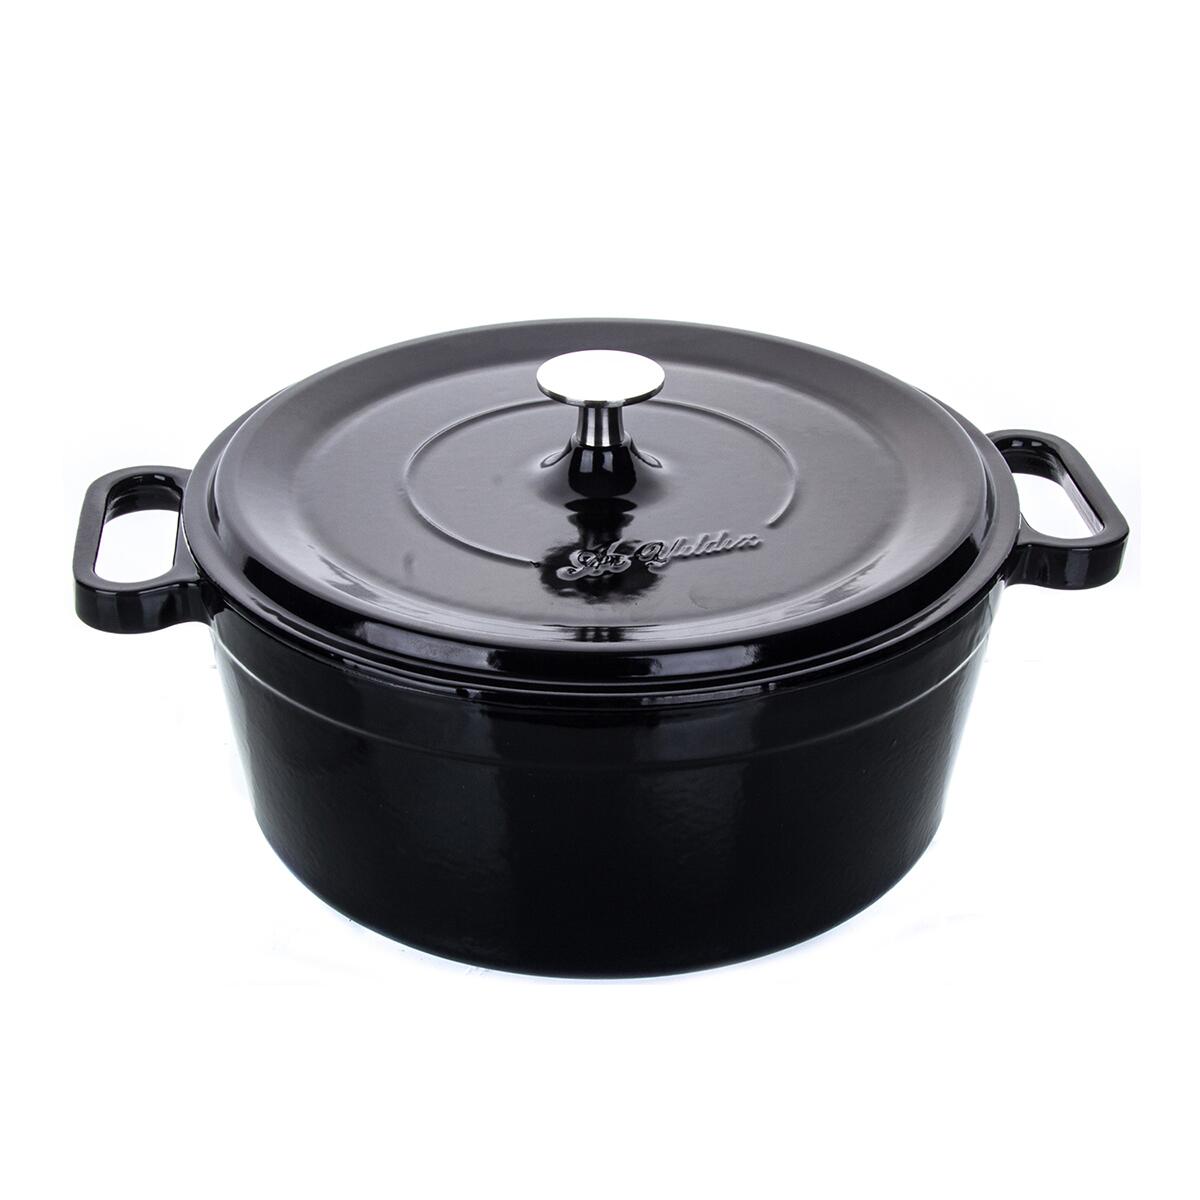 Aryıldız TT Cast Iron Pot Black 24cm